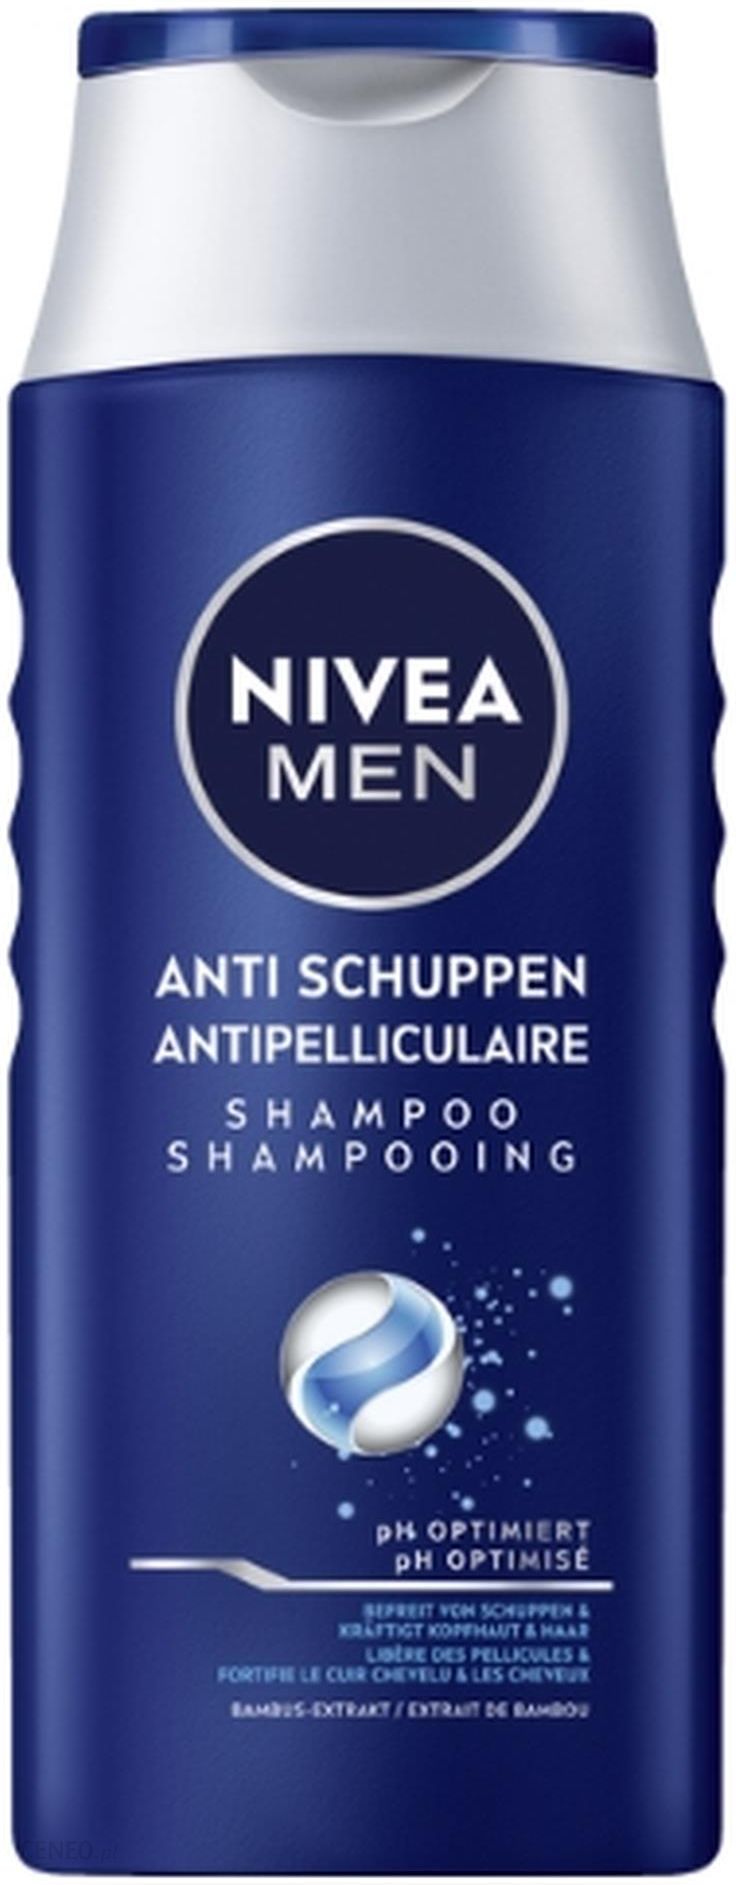 przeciwłupieżowy szampon power nivea